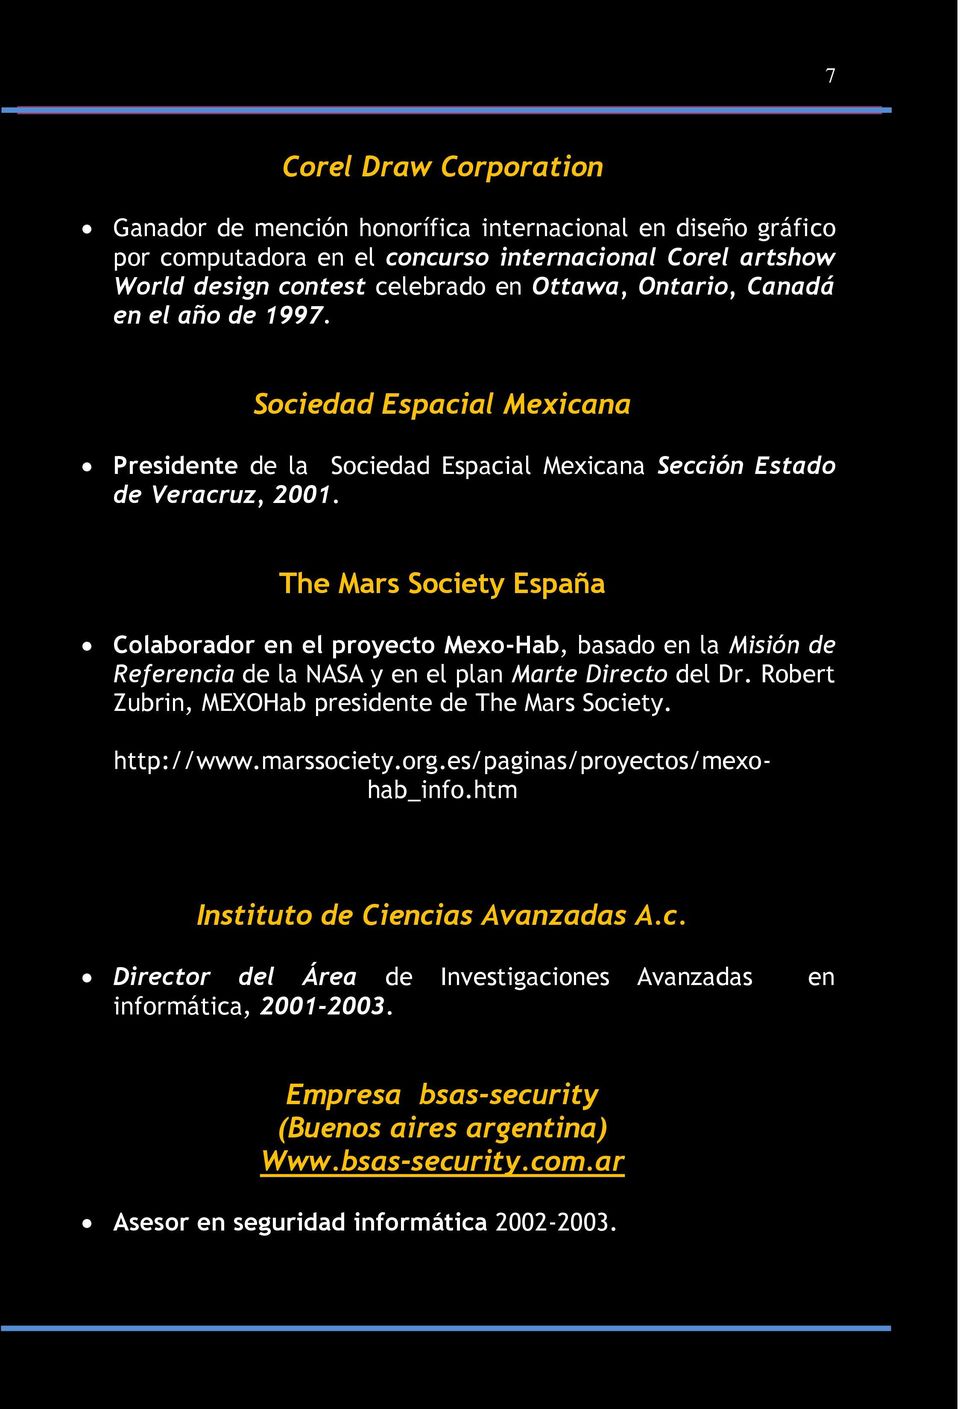 The Mars Society España Colaborador en el proyecto Mexo-Hab, basado en la Misión de Referencia de la NASA y en el plan Marte Directo del Dr. Robert Zubrin, MEXOHab presidente de The Mars Society.